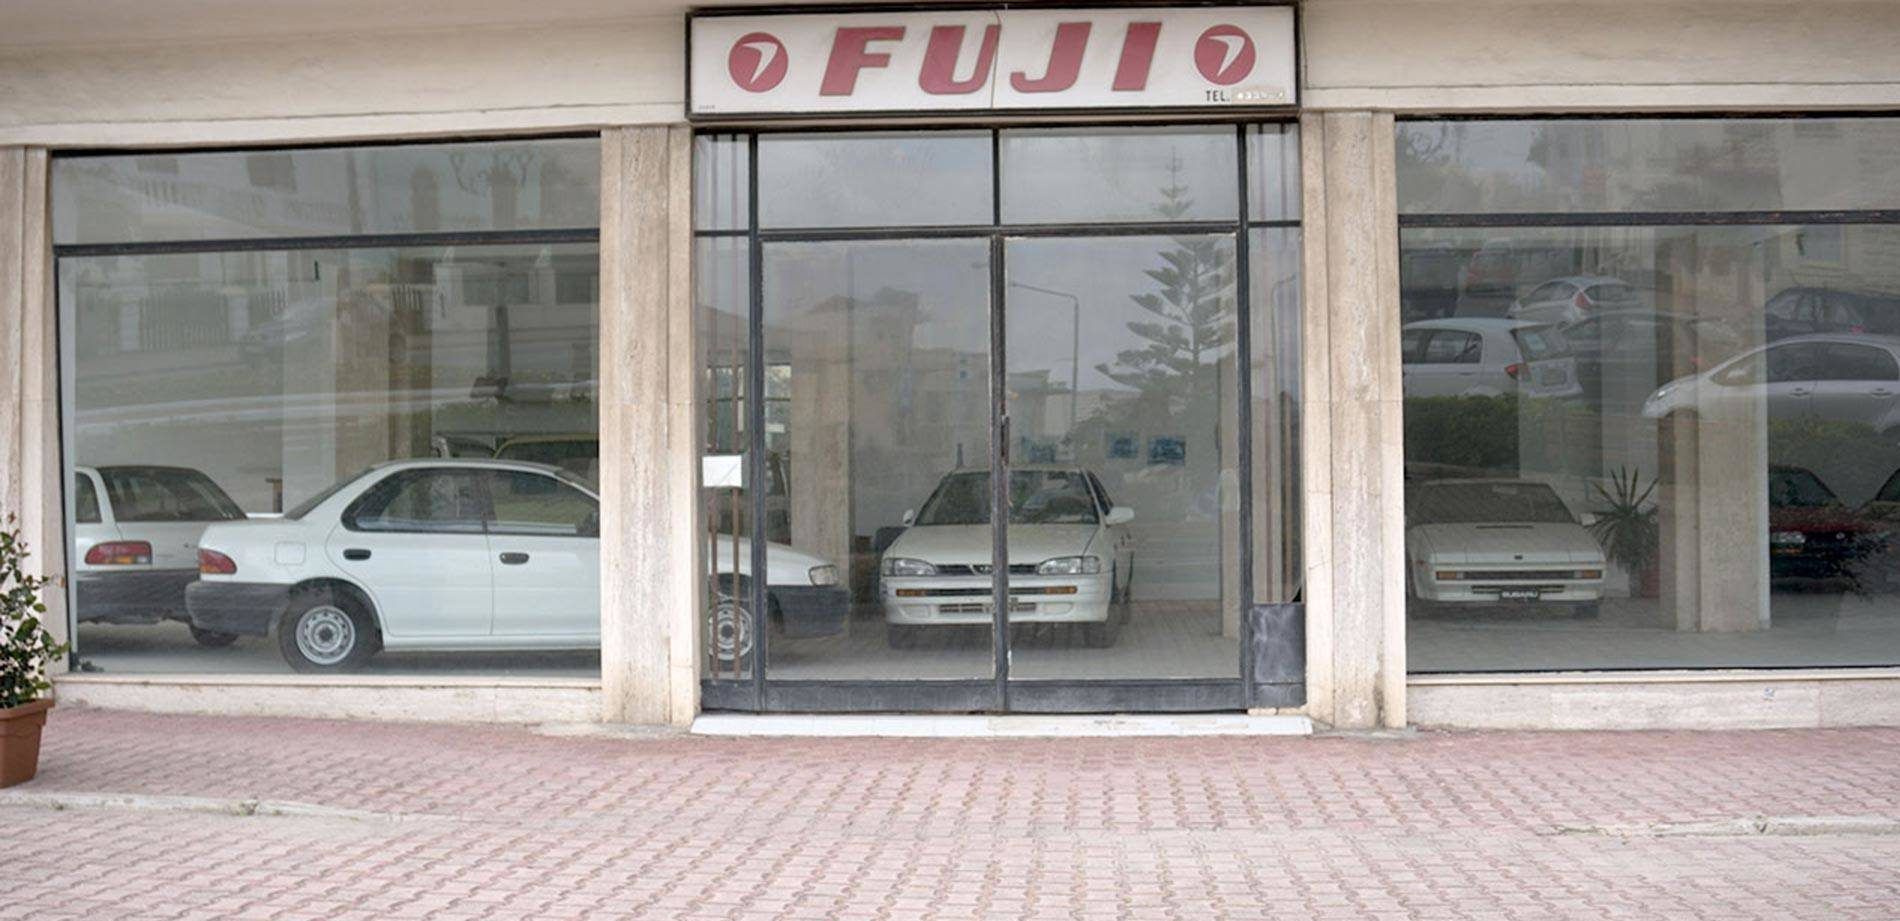 Malta Subaru Dealership